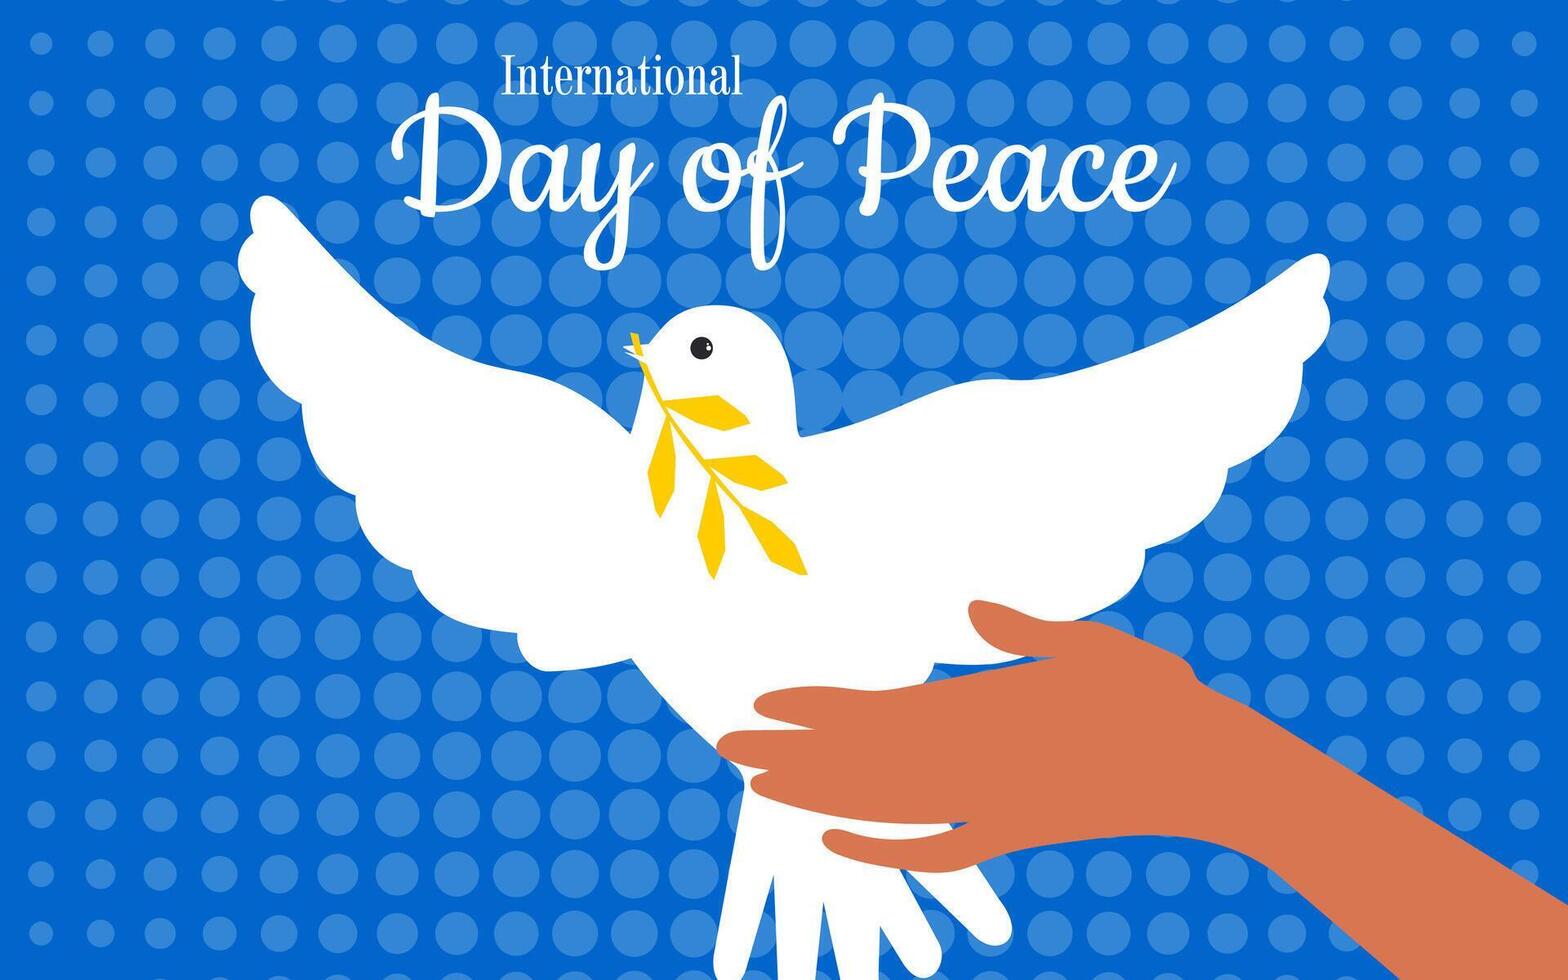 giornata internazionale della pace vettore